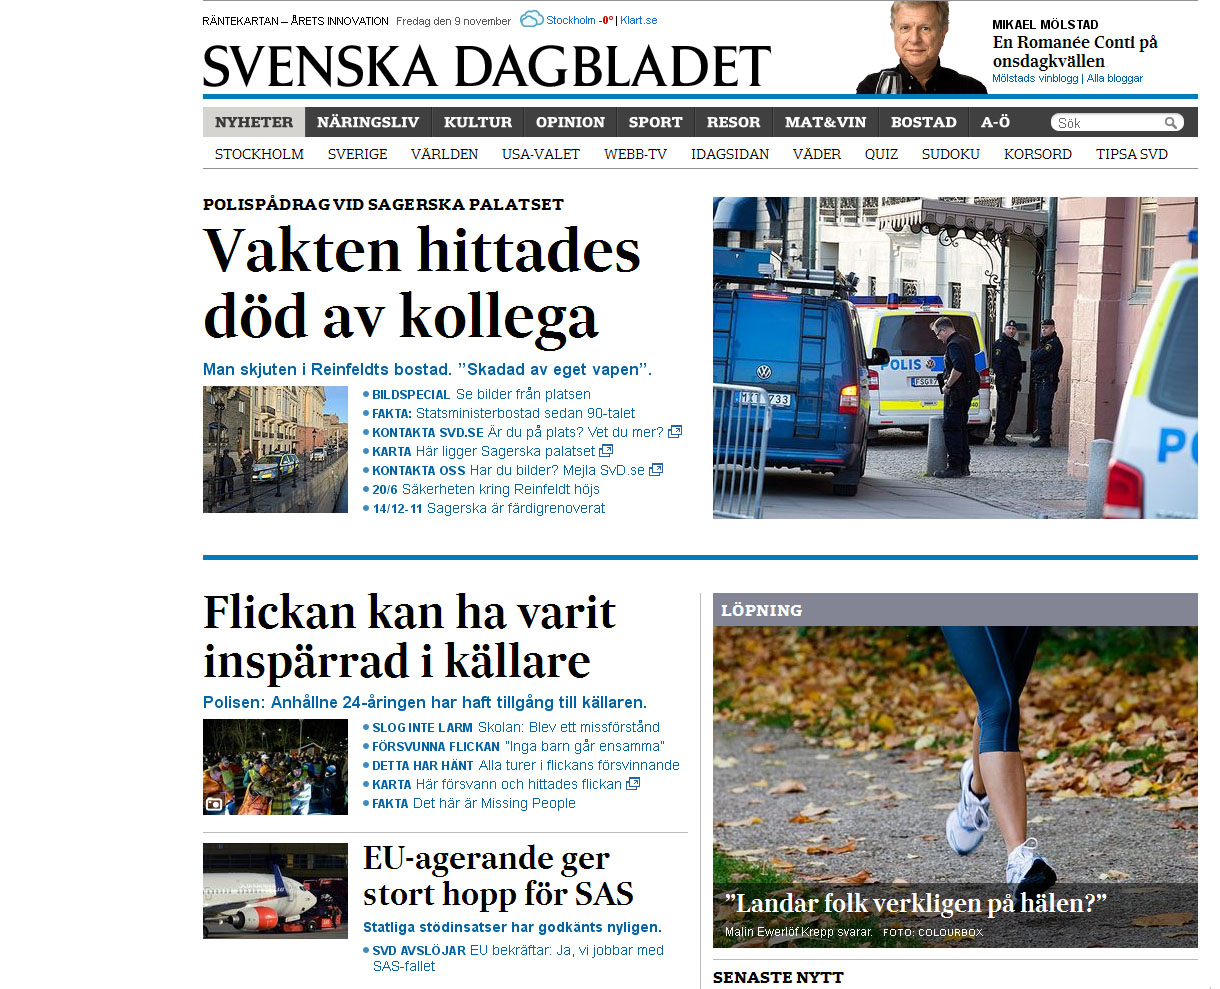 A svéd napilap honlapja egy PC-n kétoldalt üres sávval jelenik meg – a mobil képernyőjére van már hangolva